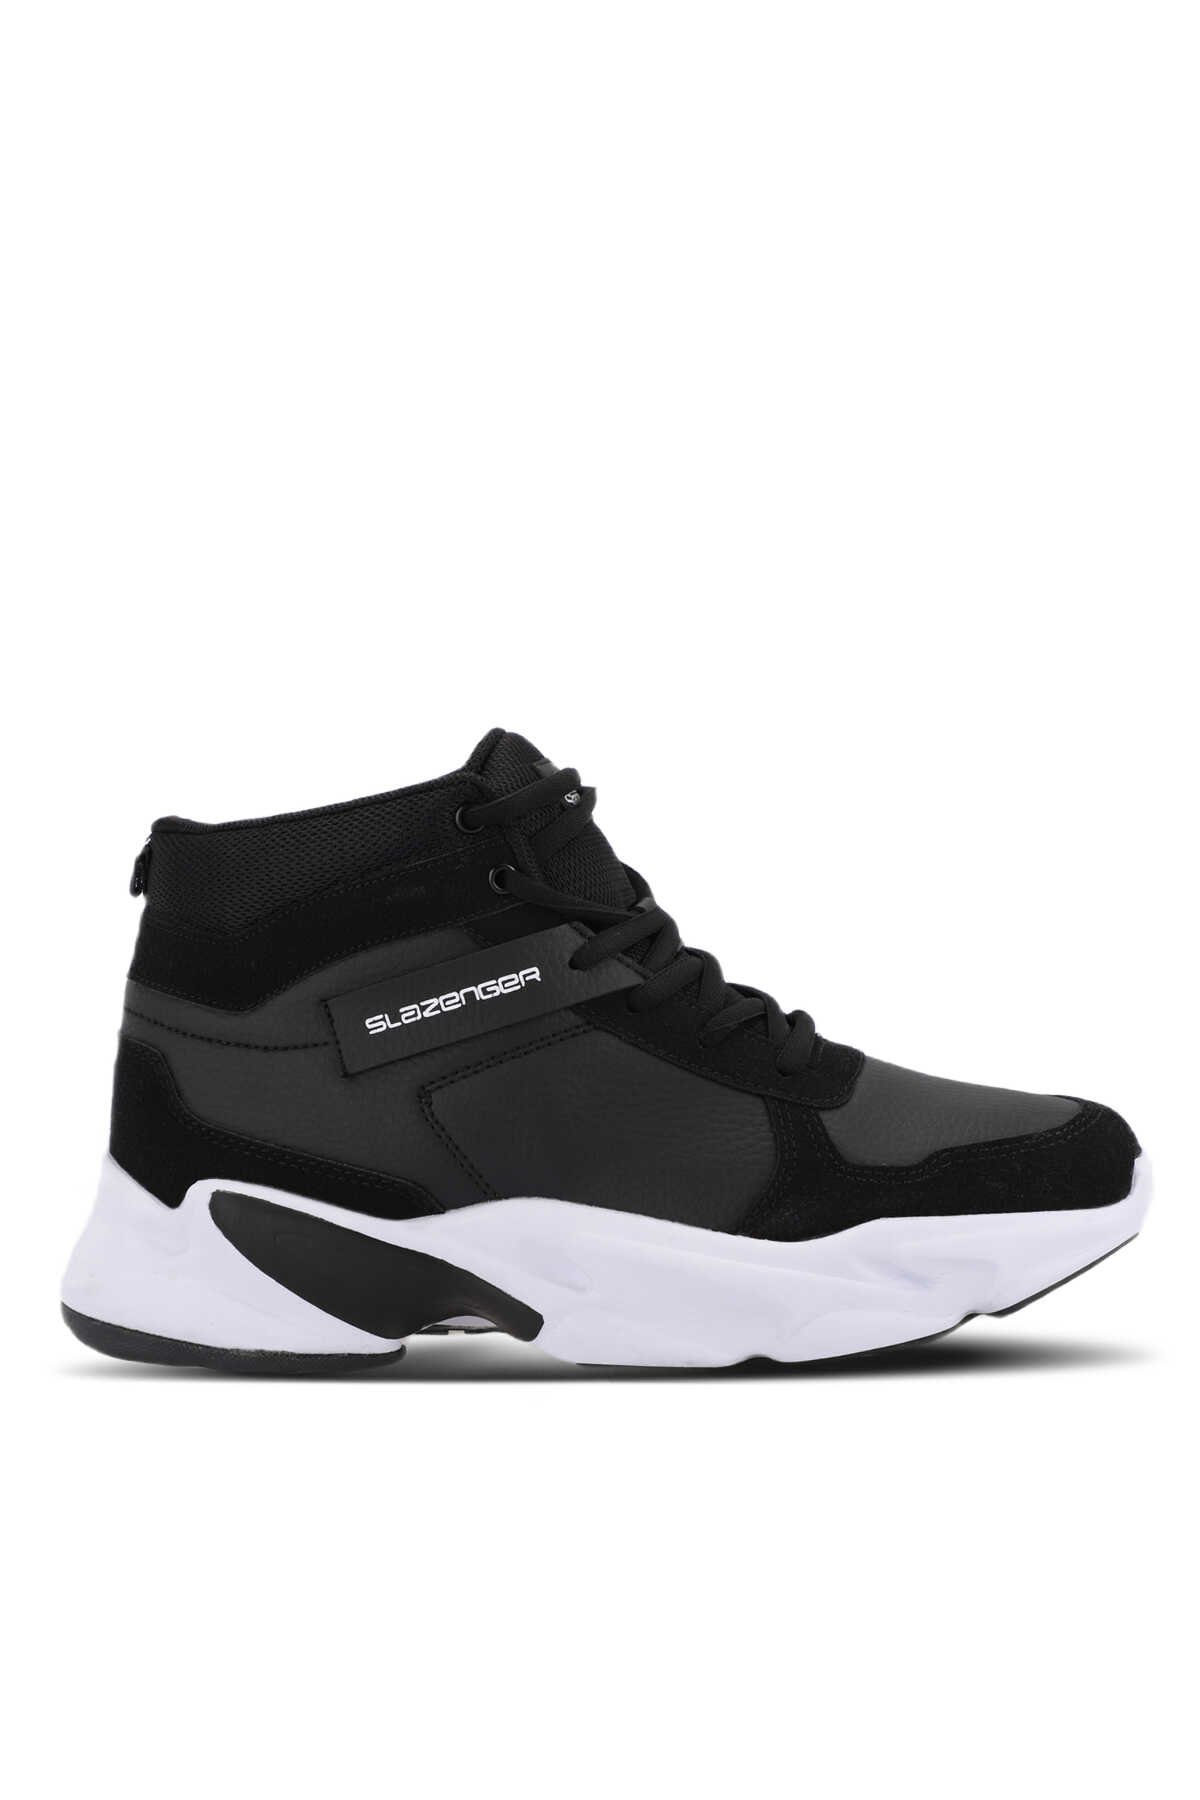 Slazenger - Slazenger PATTERN Sneaker Erkek Ayakkabı Siyah / Beyaz